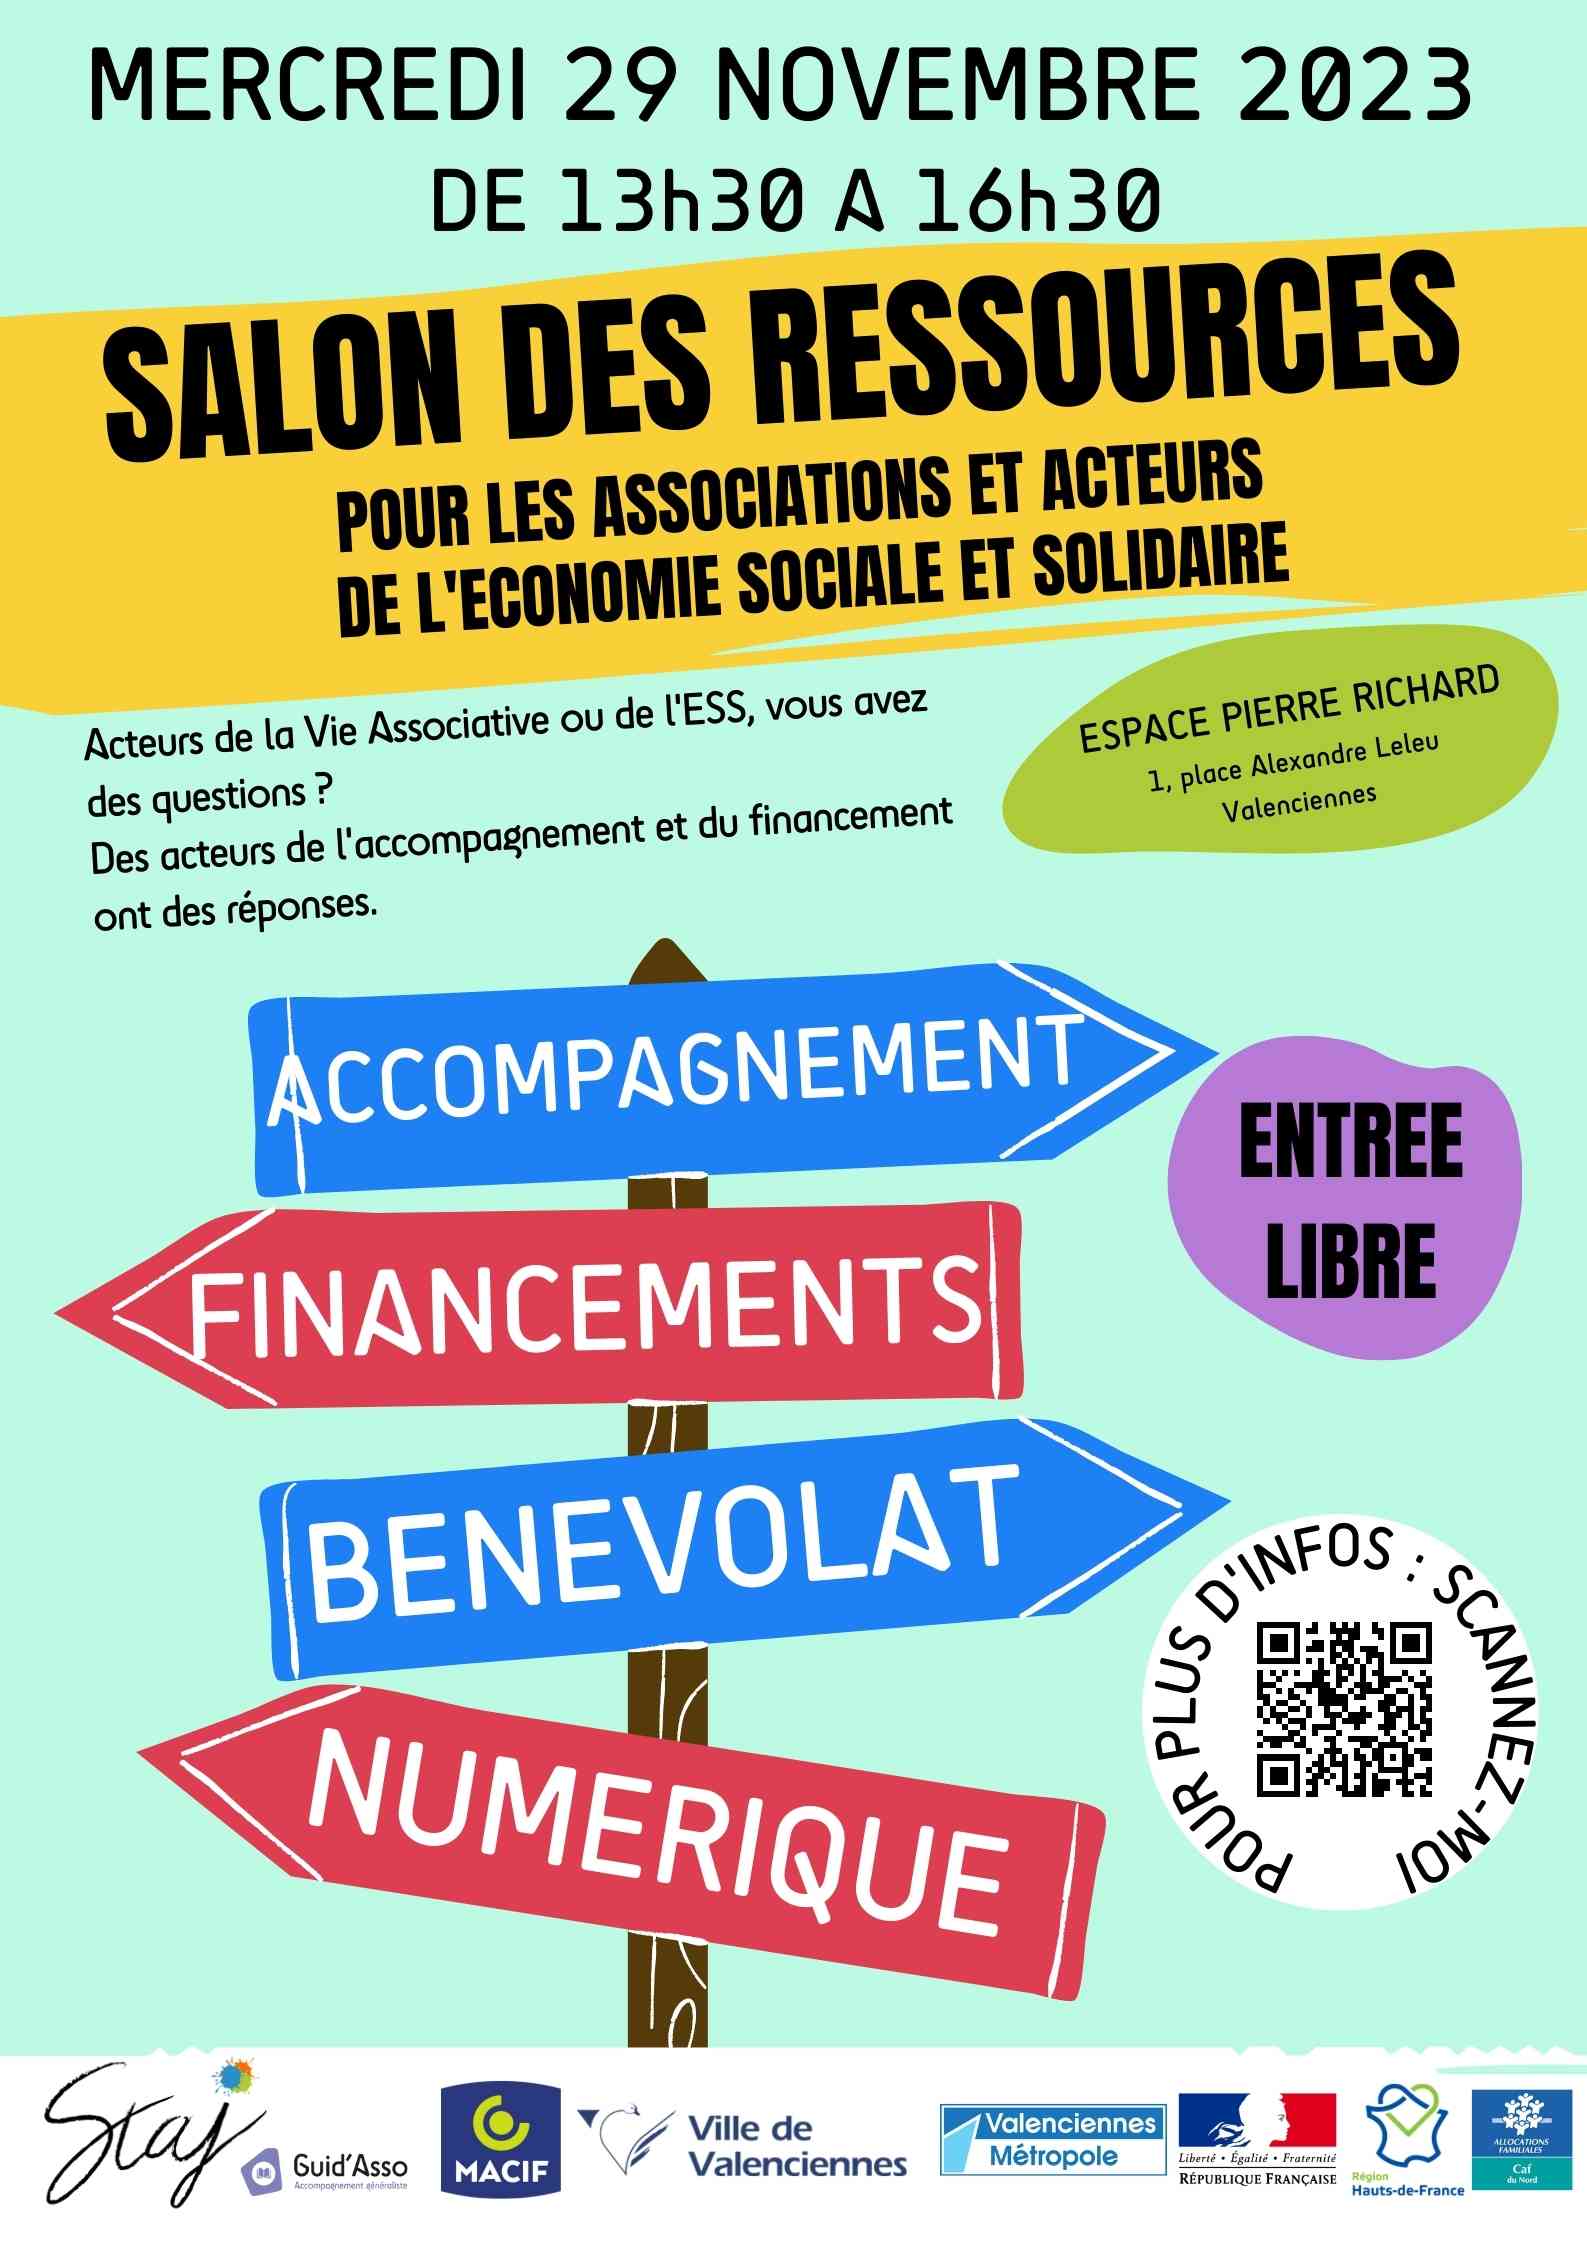 Lire la suite à propos de l’article Salon des ressources pour les Associations et acteurs de l’Economie Sociale et Solidaire